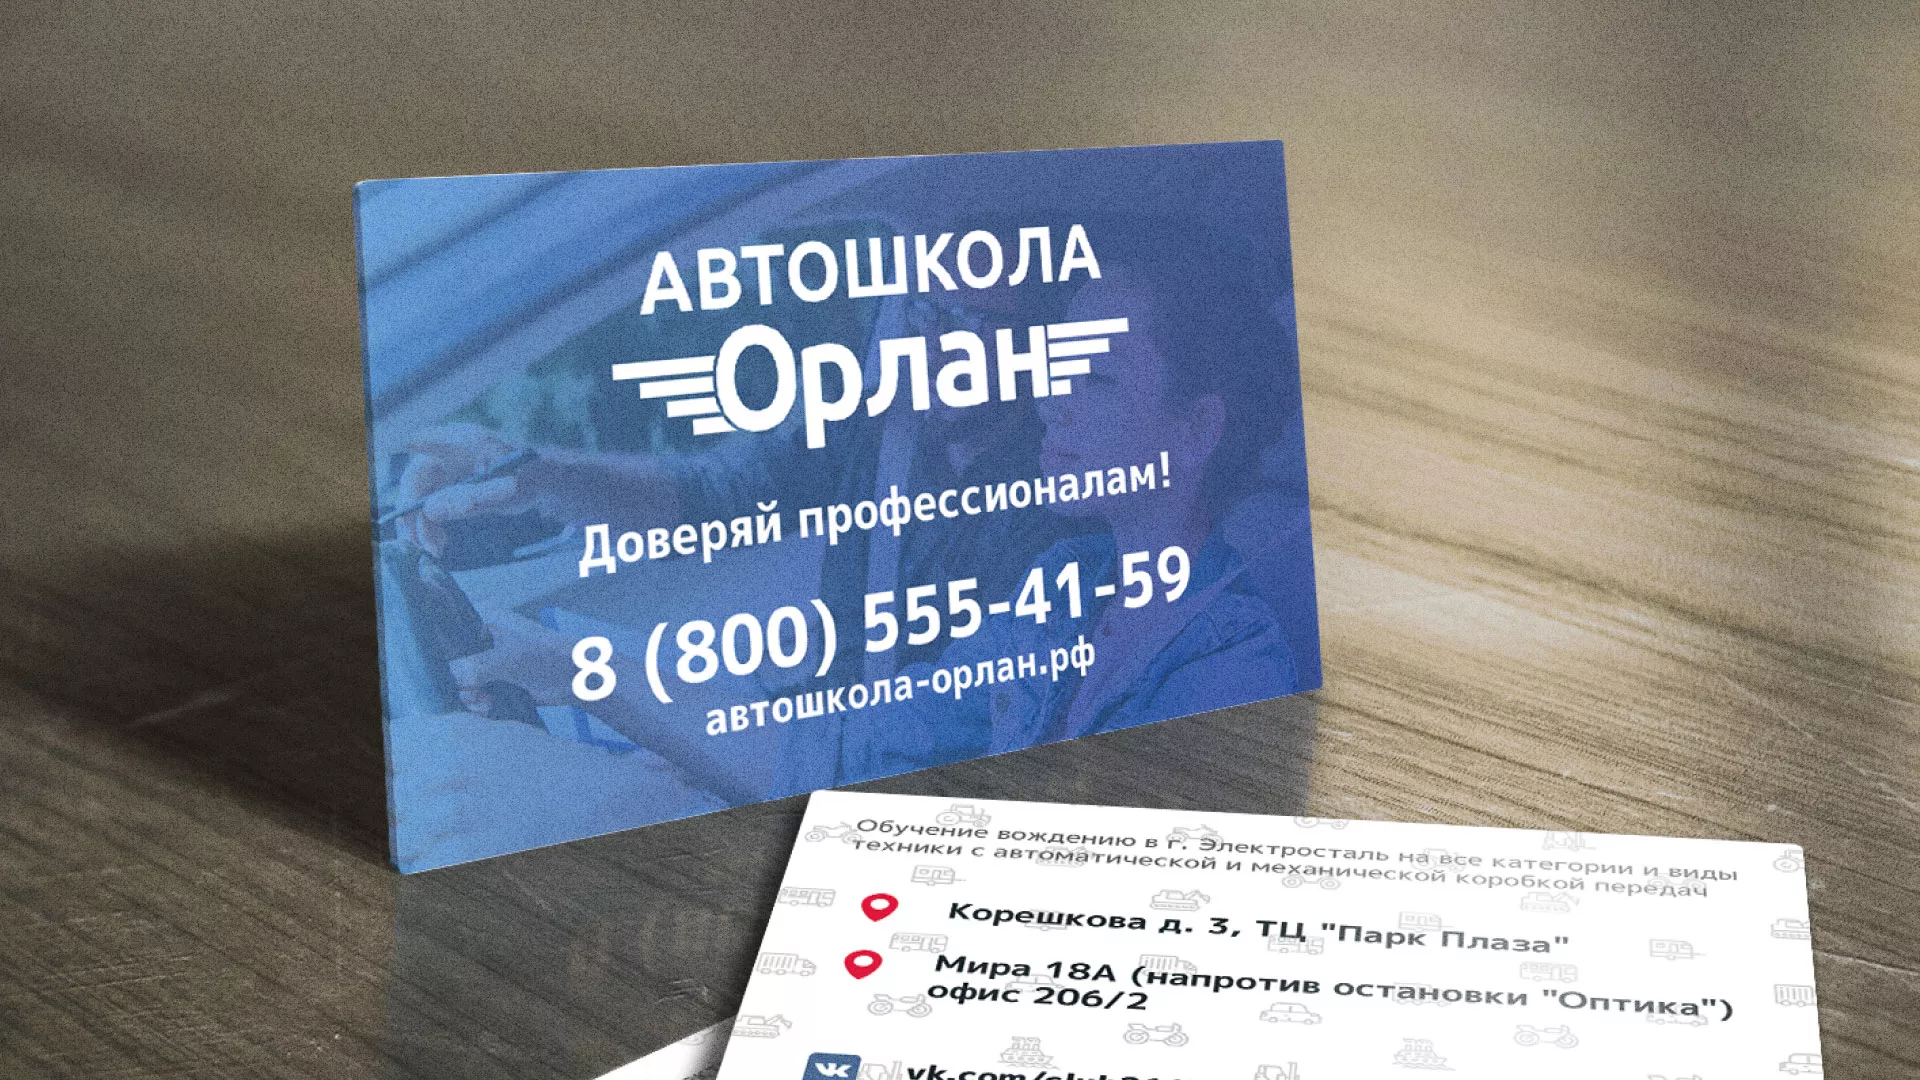 Дизайн рекламных визиток для автошколы «Орлан» в Орехово-Зуево